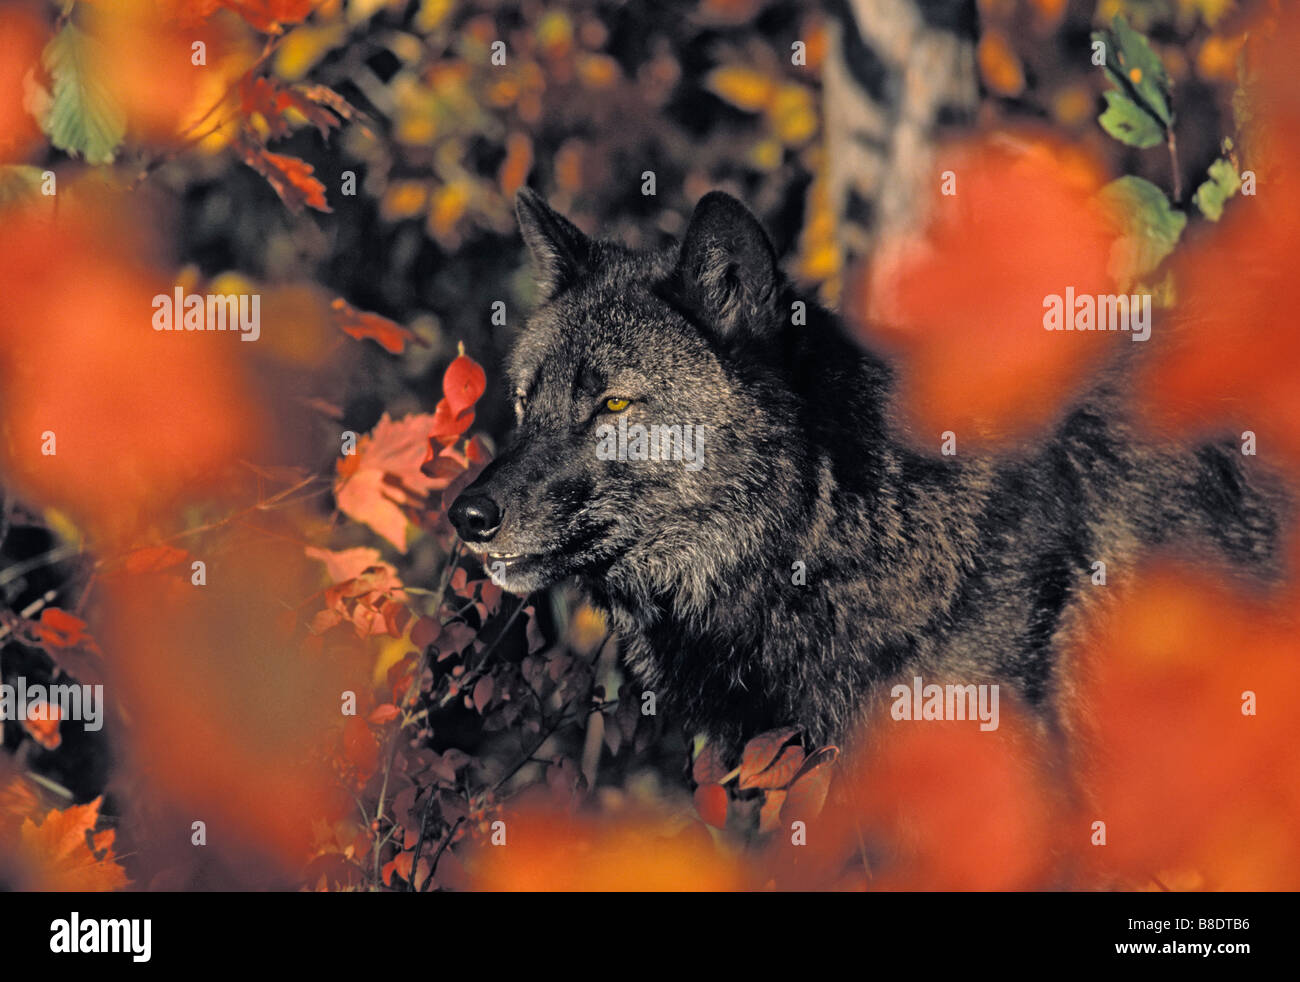 tk0634, Thomas Kitchin; Grauer Wolf, in schwarzer Farbe Phase von Herbst Ahornbäume, Minnesota Stockfoto